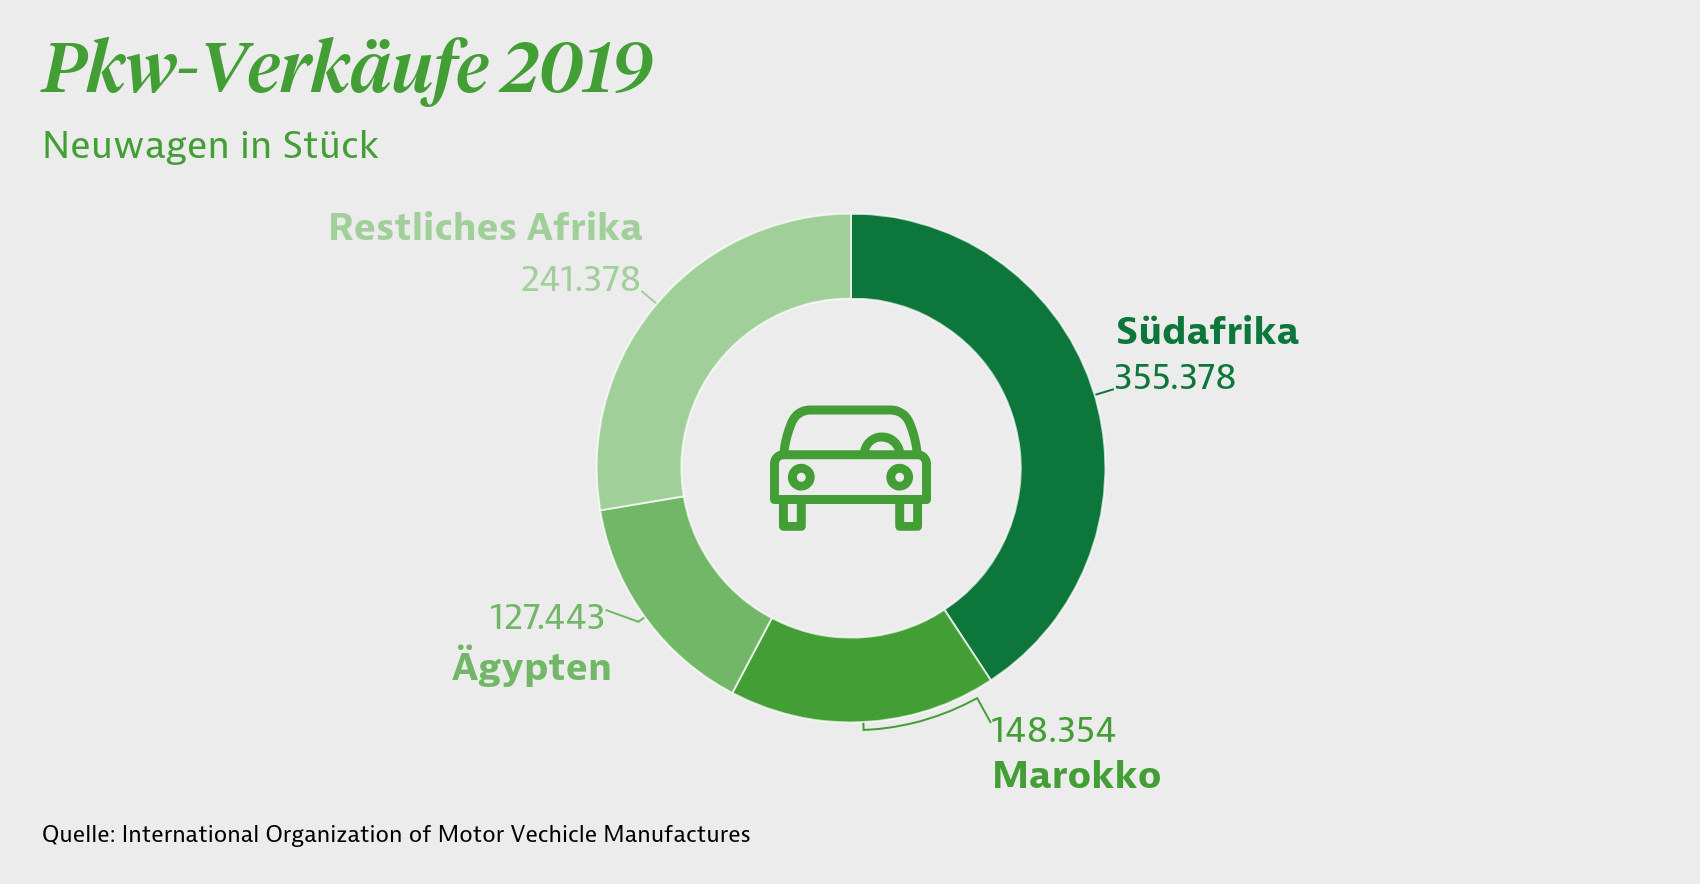 Pkw-Verkäufe 2019 in Afrika